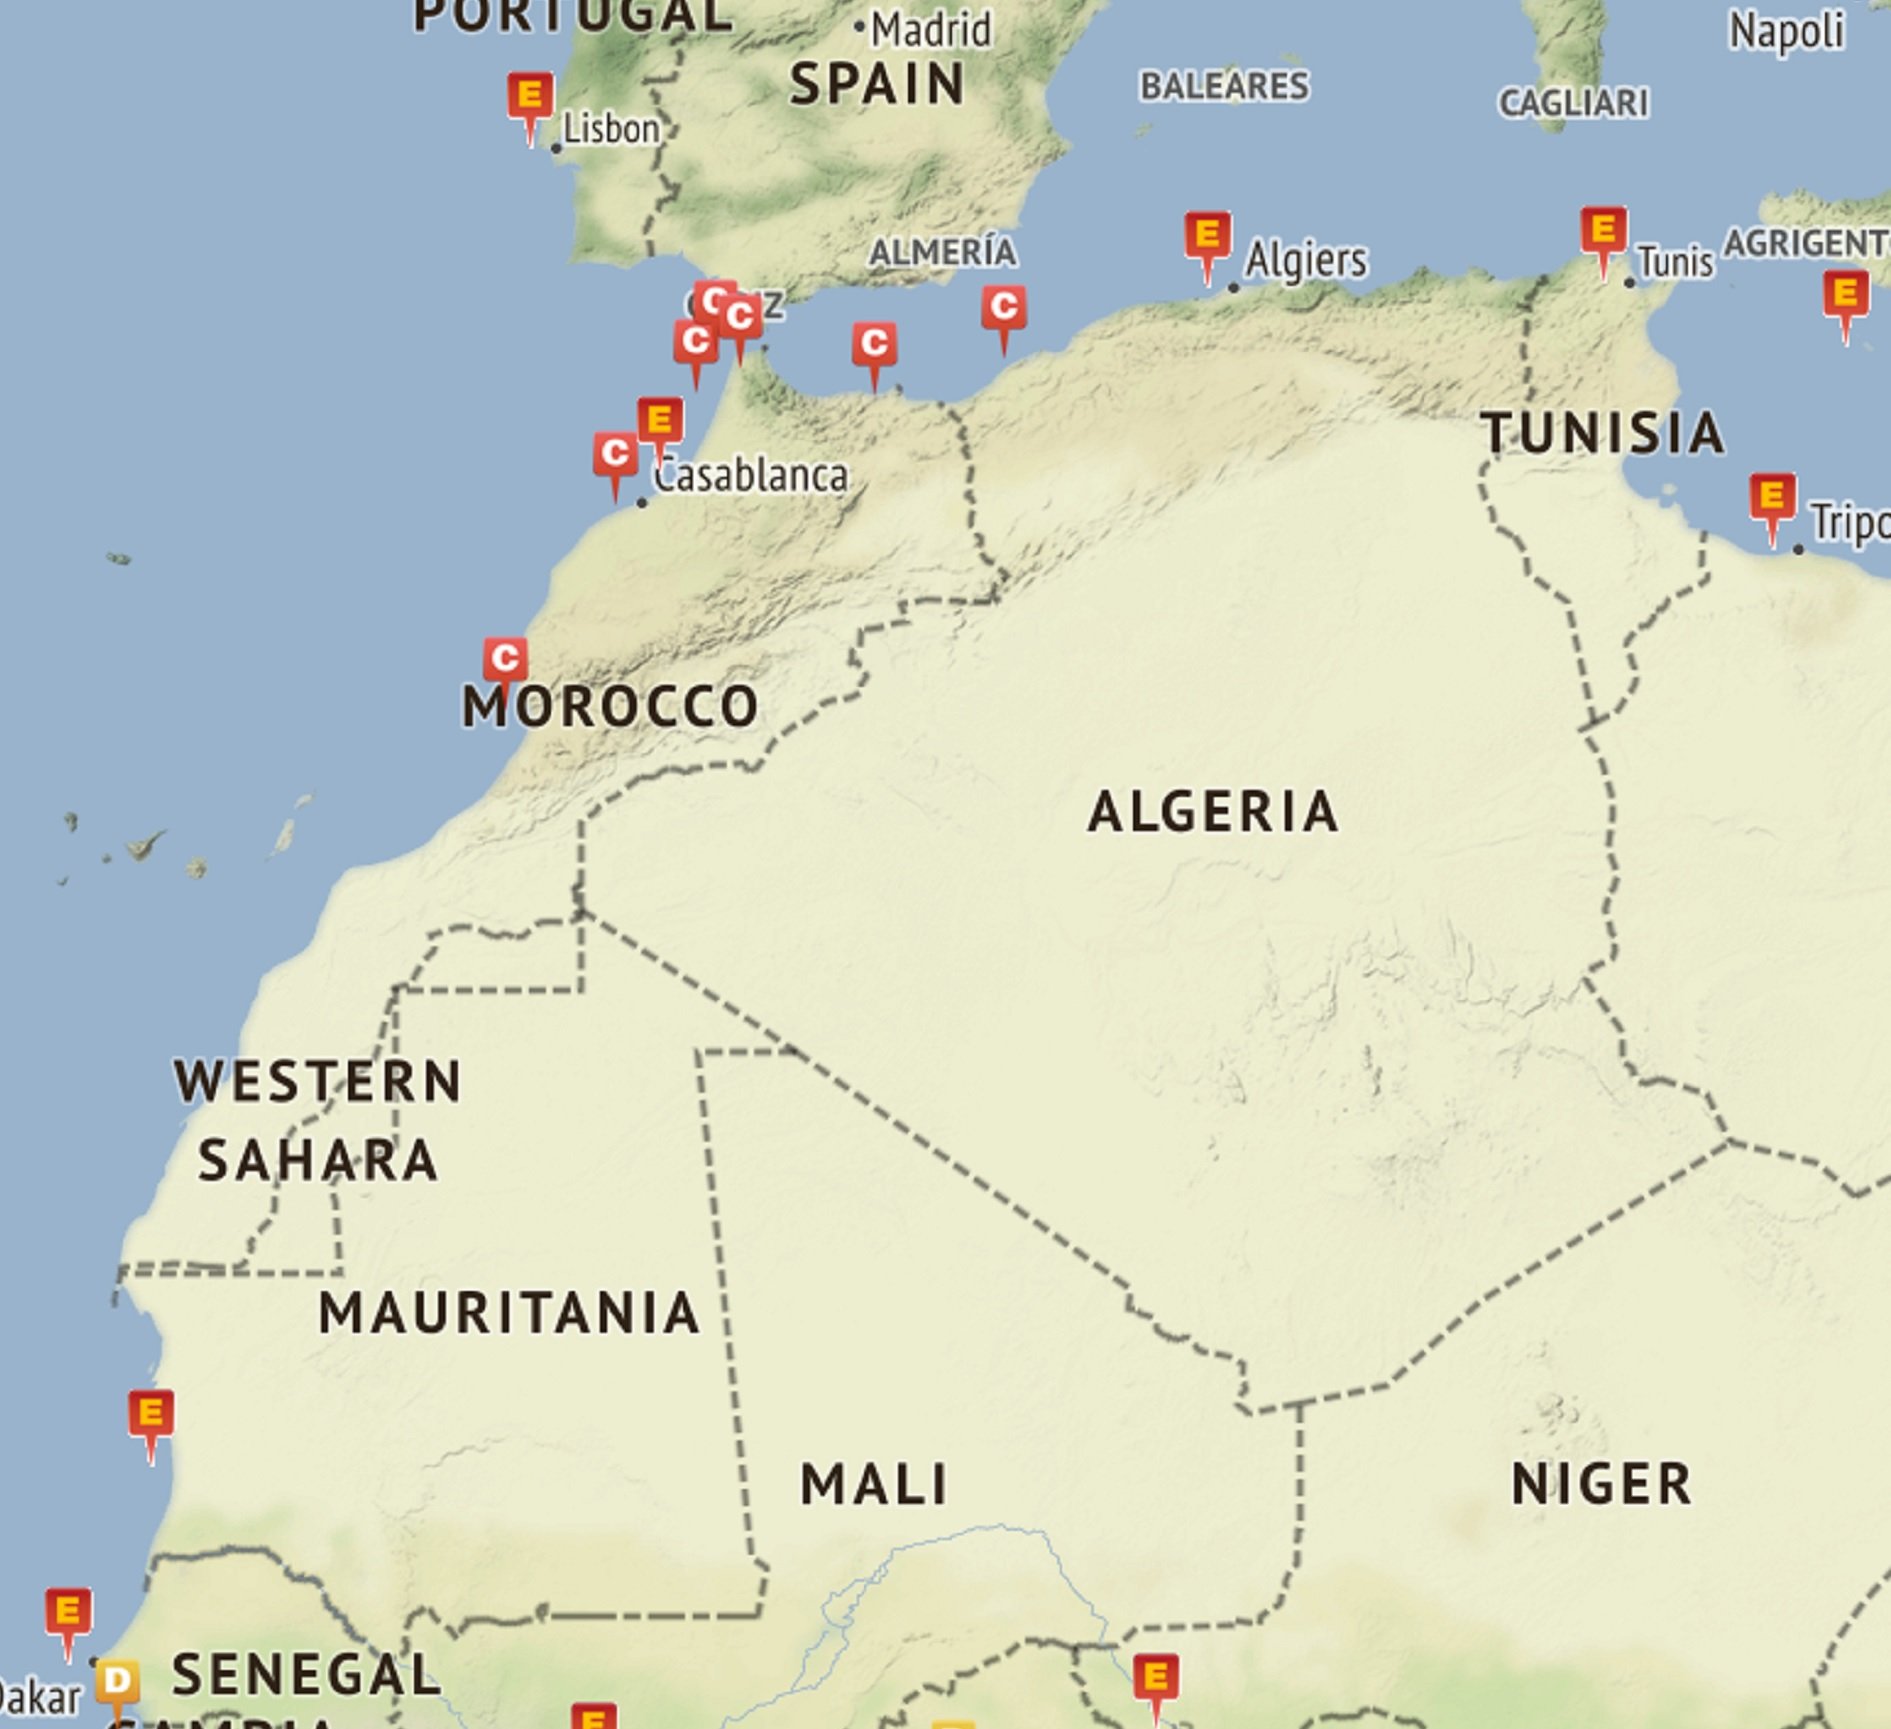 Espanya ja situa el Sàhara dins del Marroc